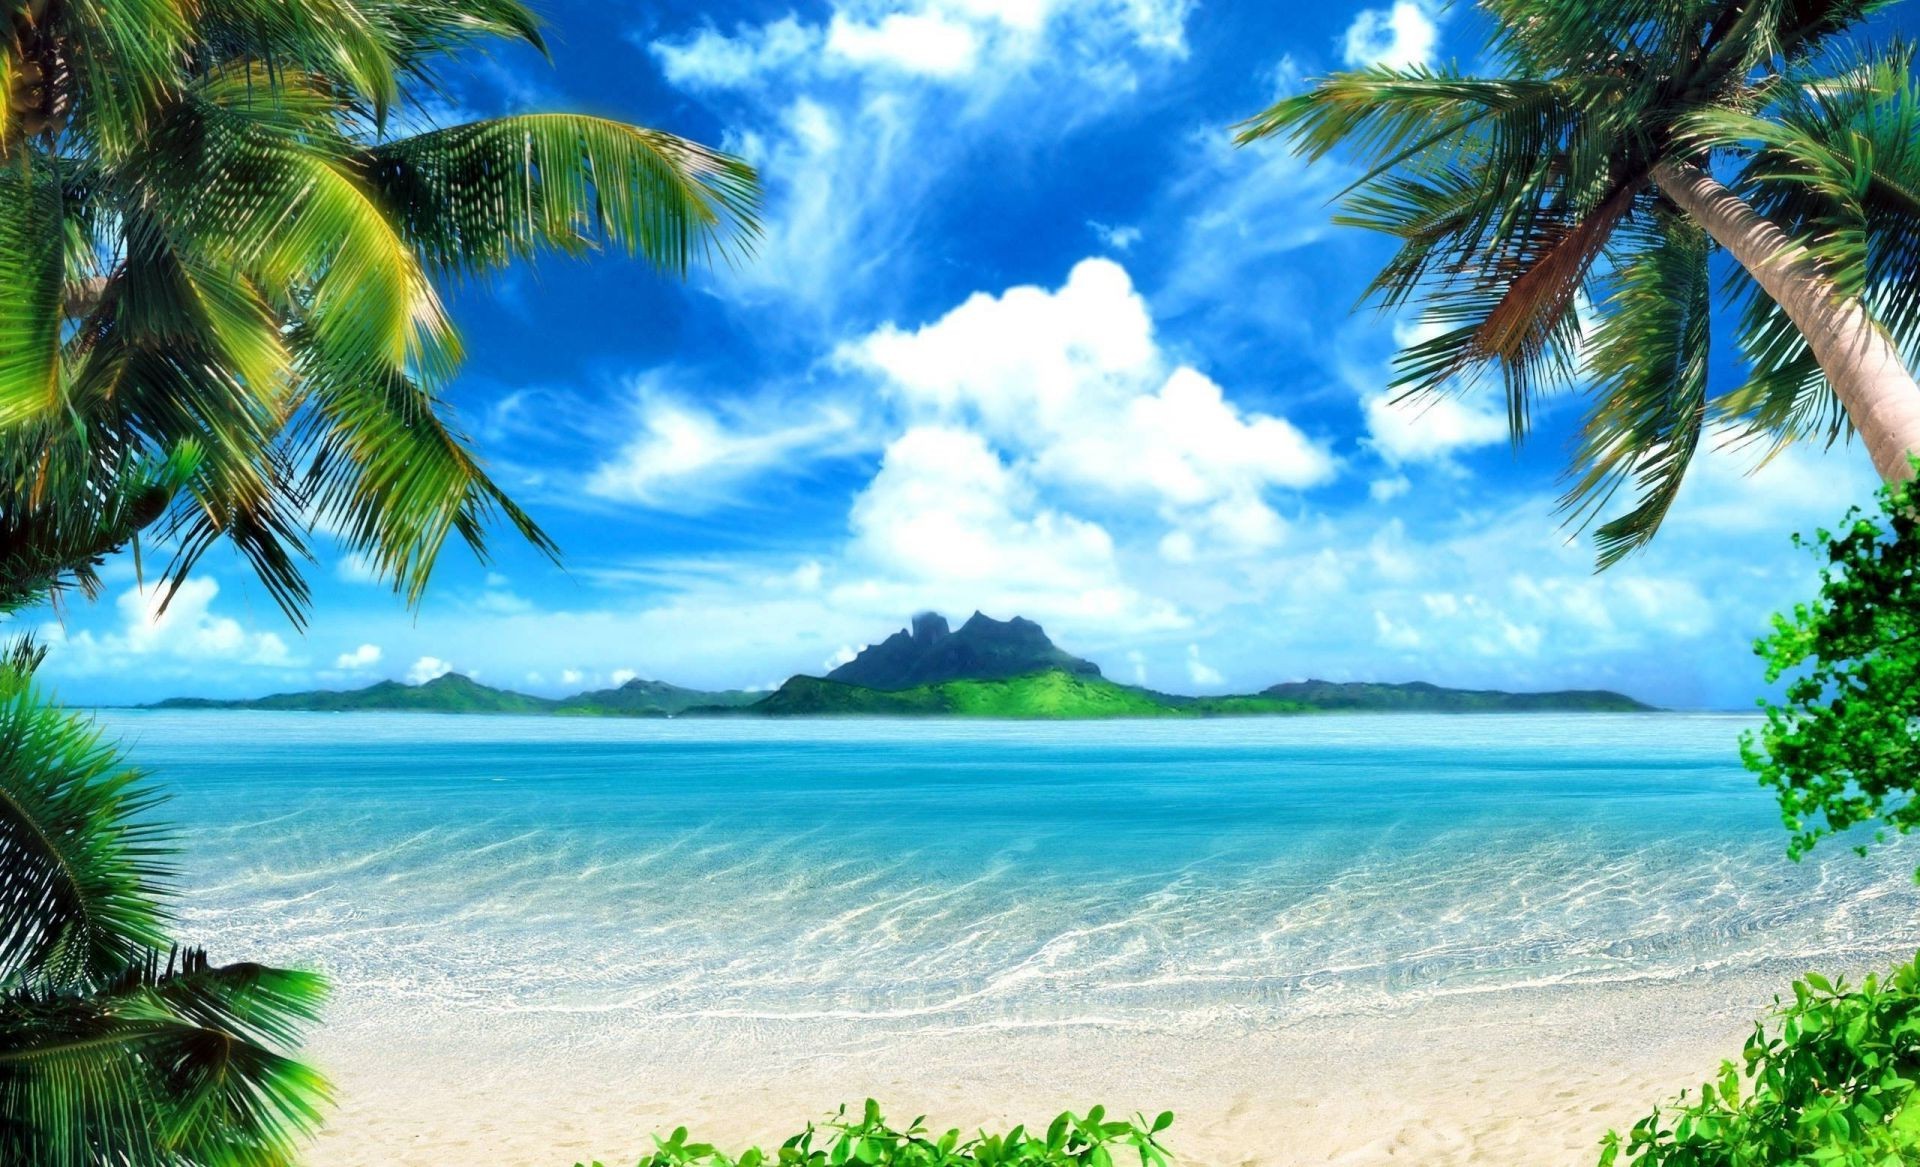 море и океан тропический пляж ладони песок остров рай кокосовое моря экзотические идиллия океан лето пейзаж бирюза курорт отпуск лагуна воды солнце релаксация